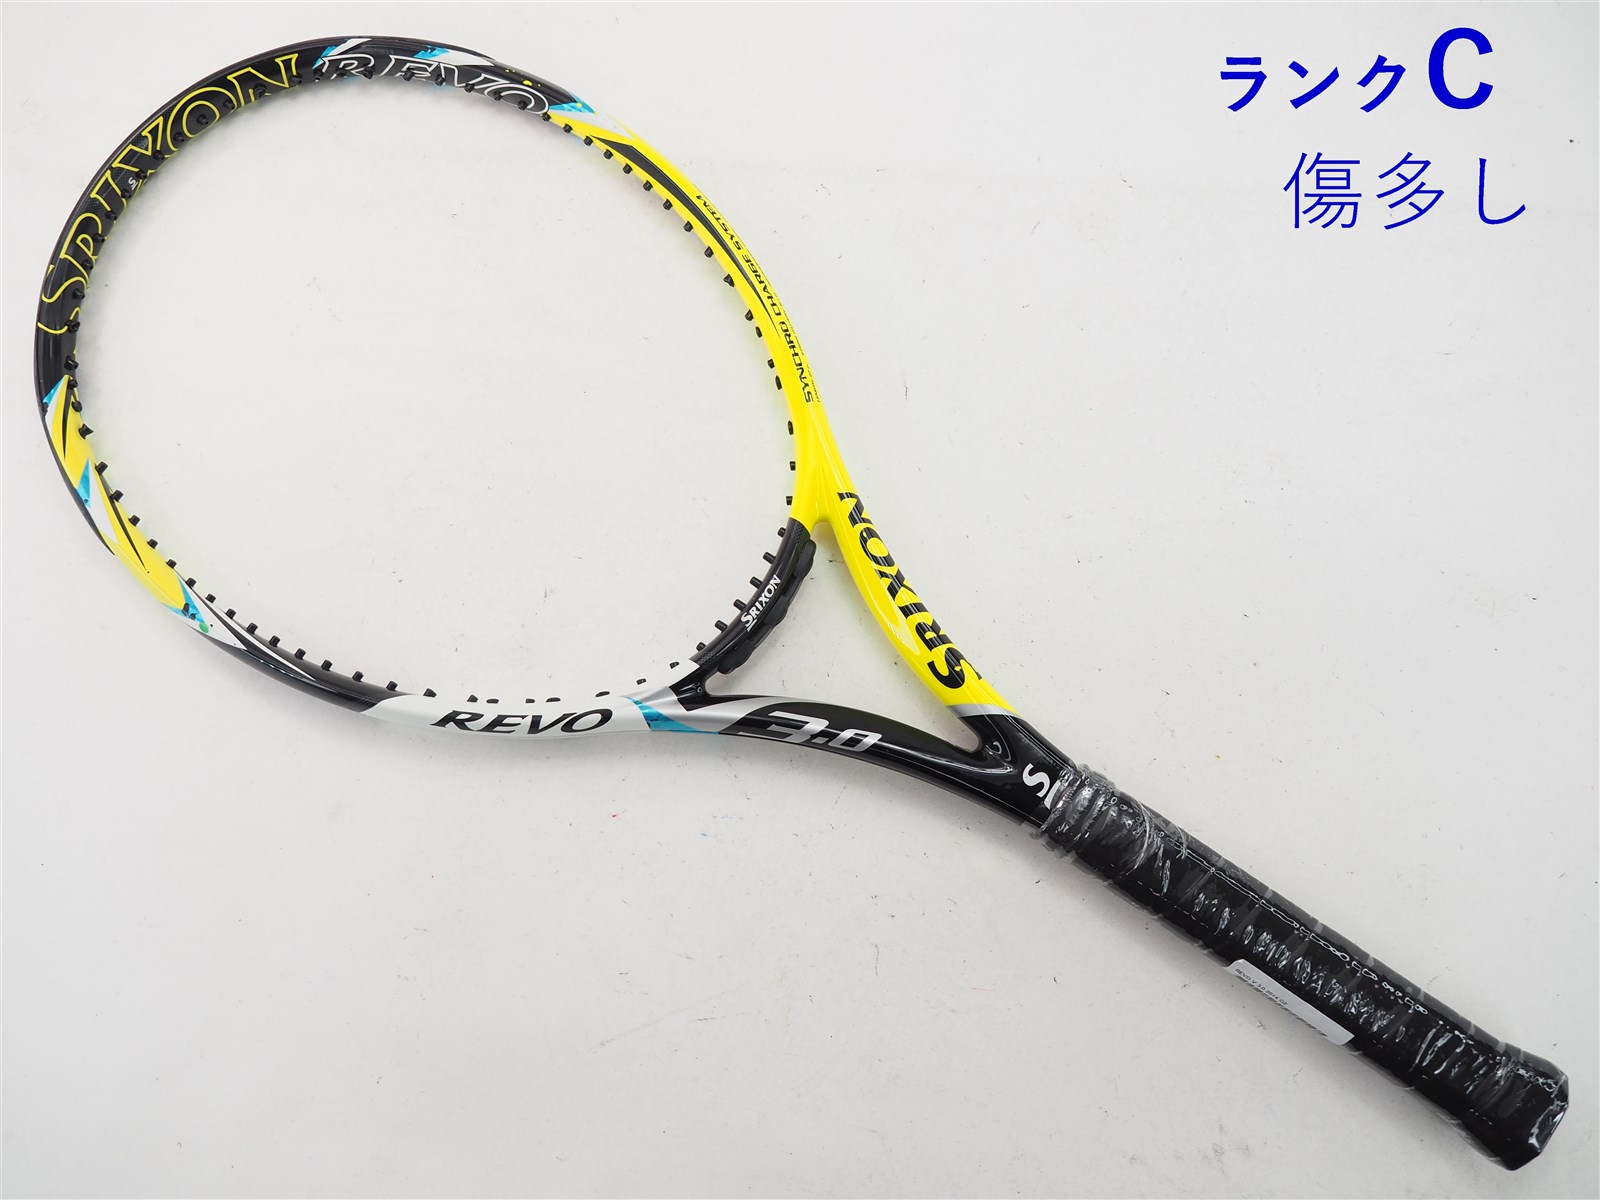 【中古】スリクソン レヴォ ブイ 3.0 2014年モデルSRIXON REVO V 3.0 2014(G2)【中古 テニスラケット】